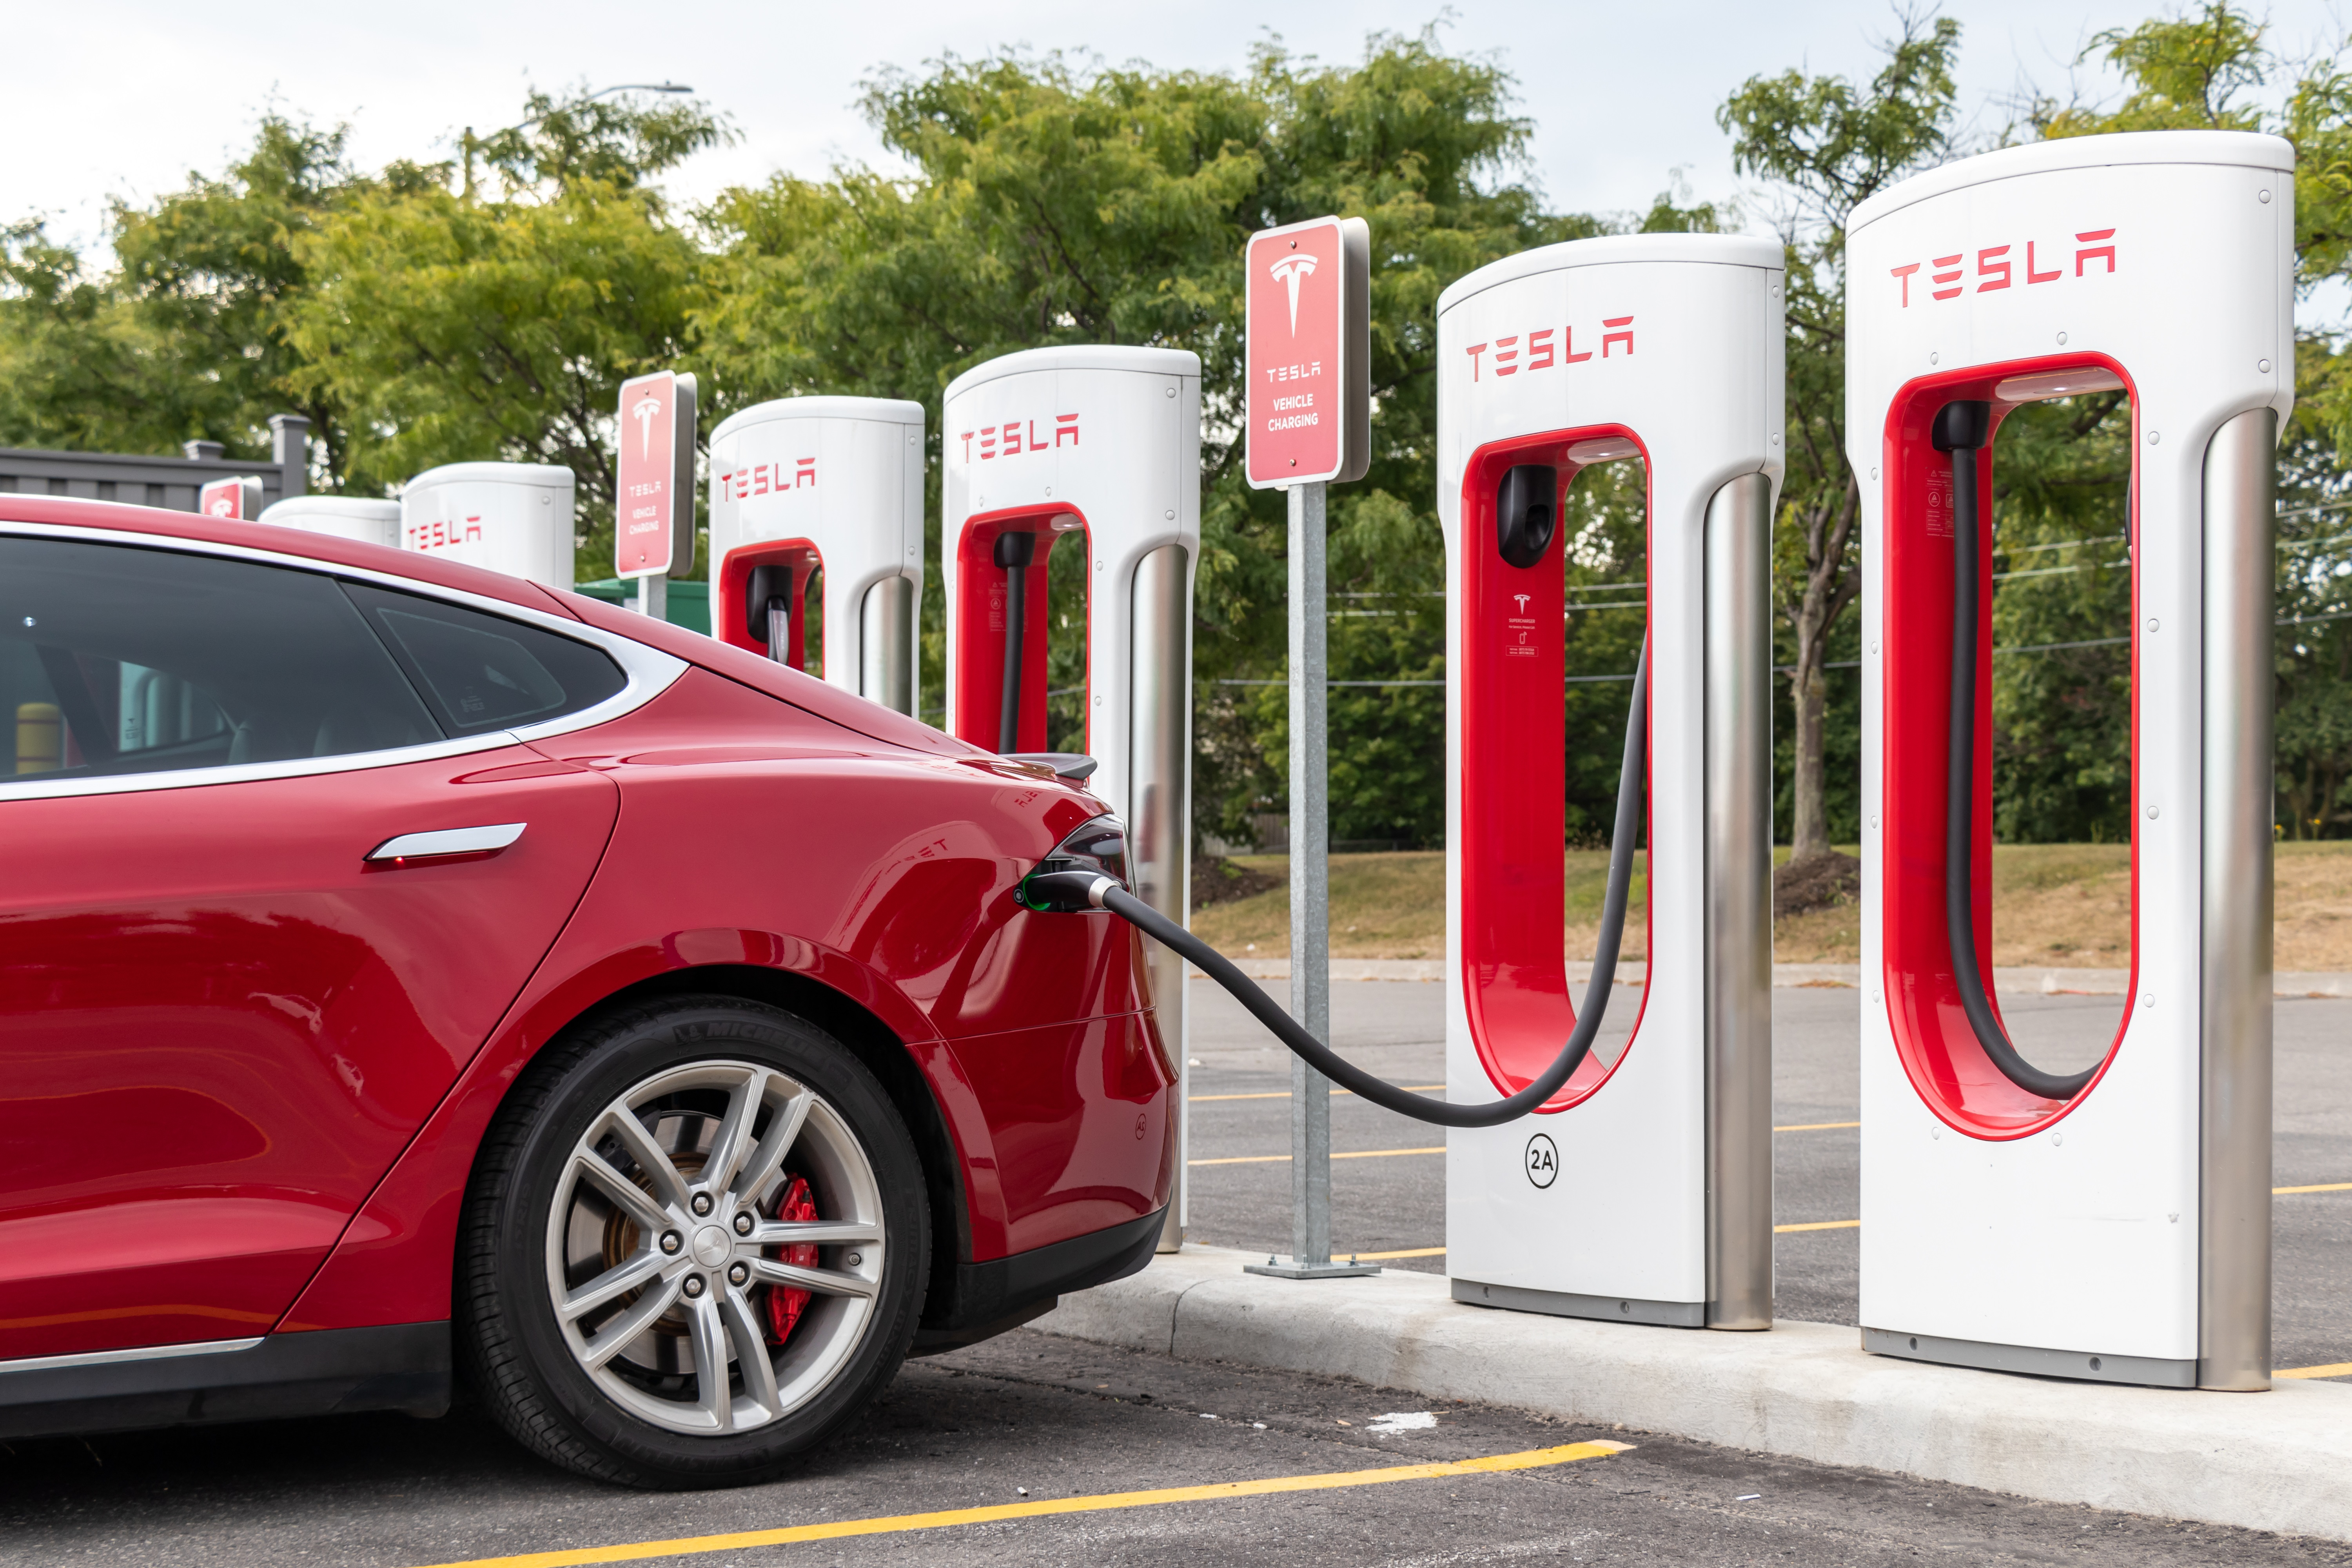 Tesla Model 3 in a supercharger station